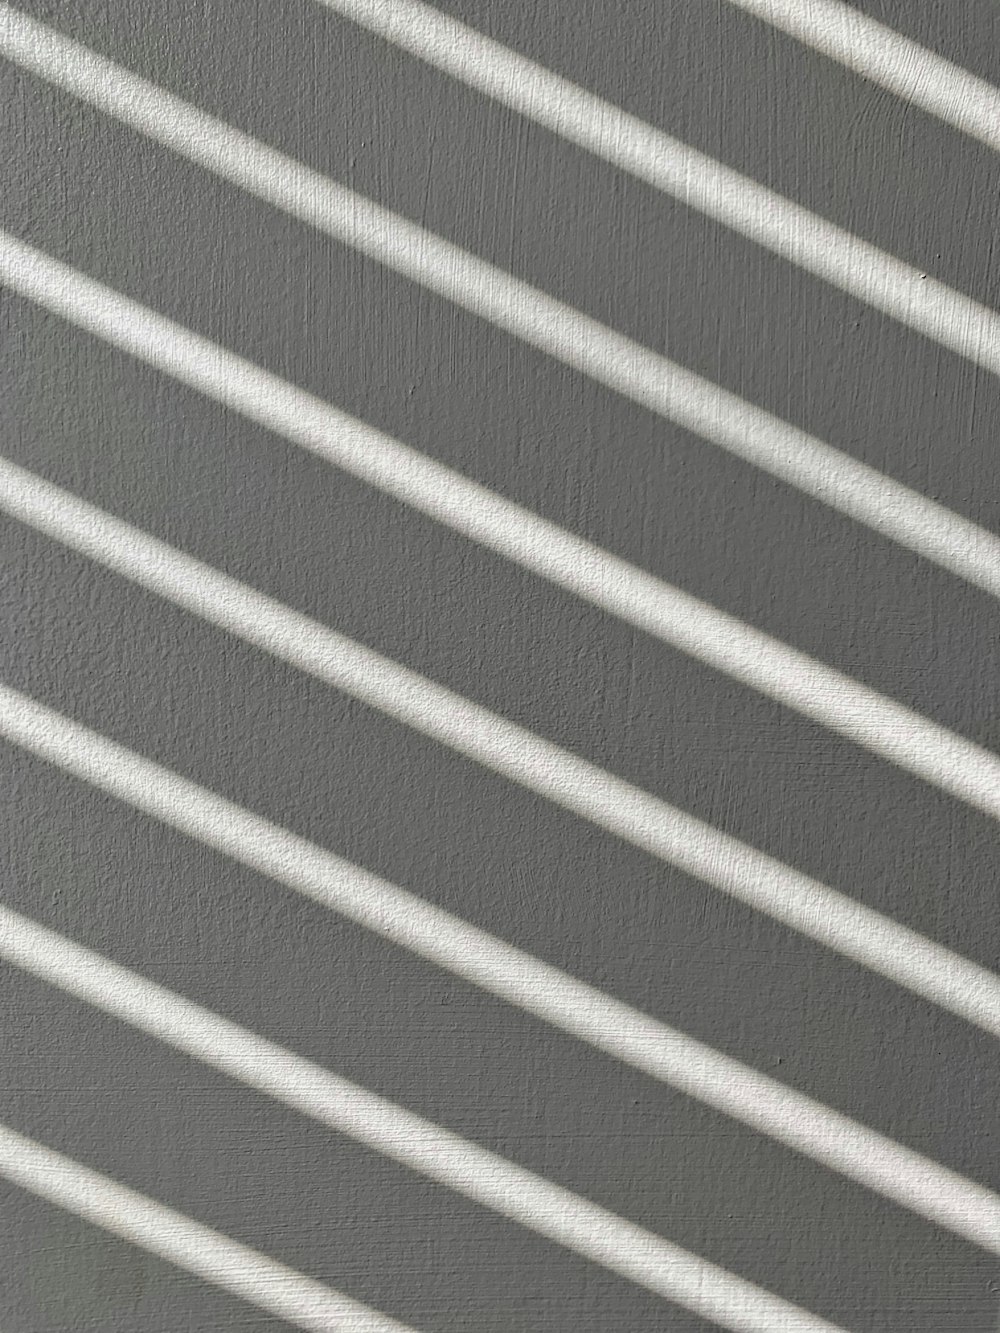 Textil a rayas blancas y grises